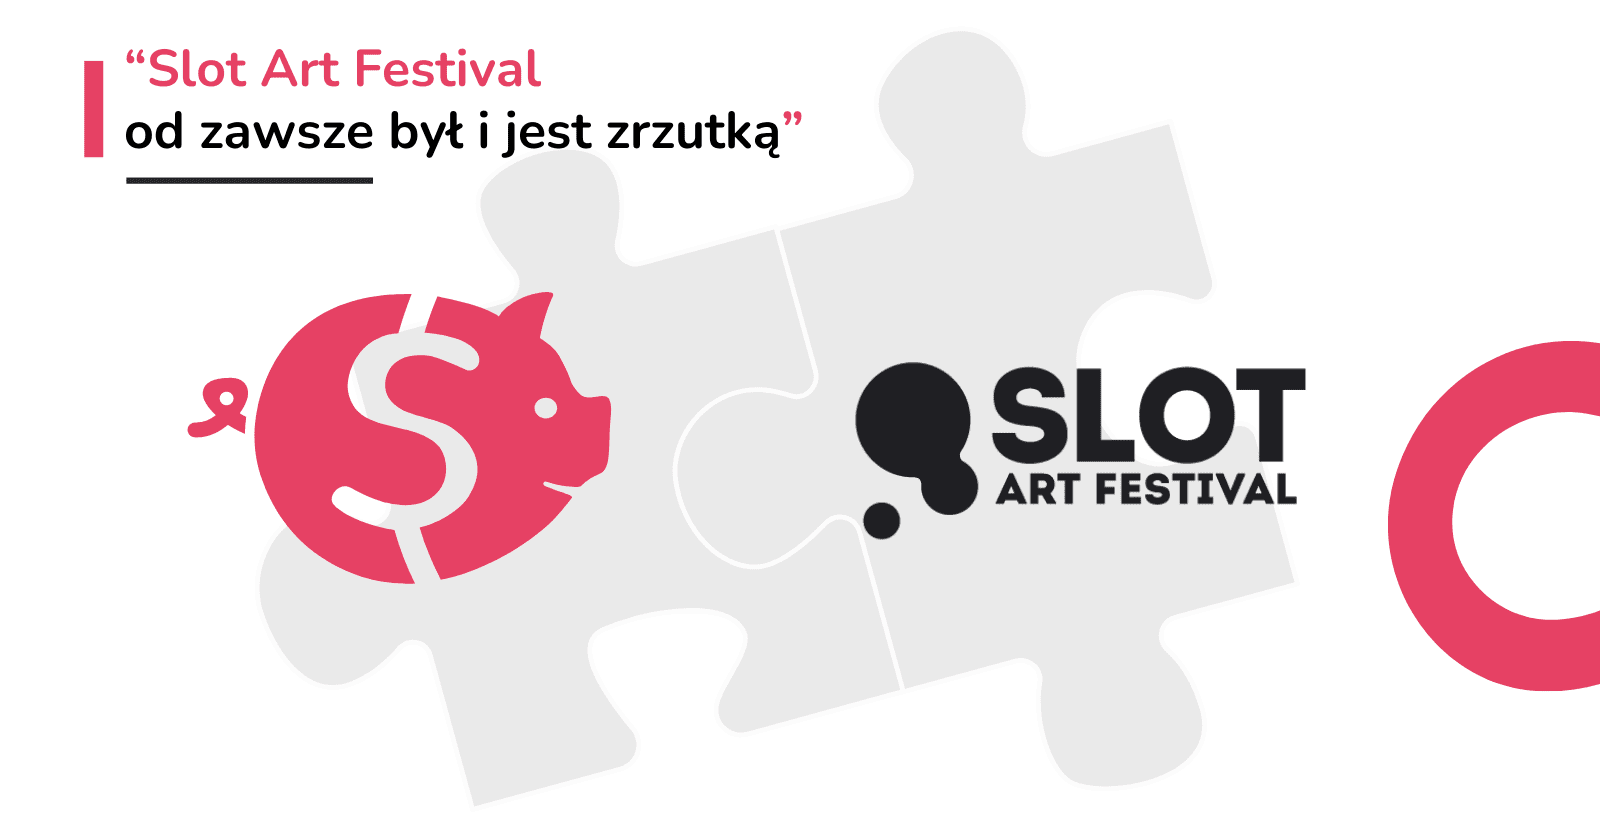 “Slot Art Festival od zawsze był i jest zrzutką” czyli o współpracy Slota i Zrzutki